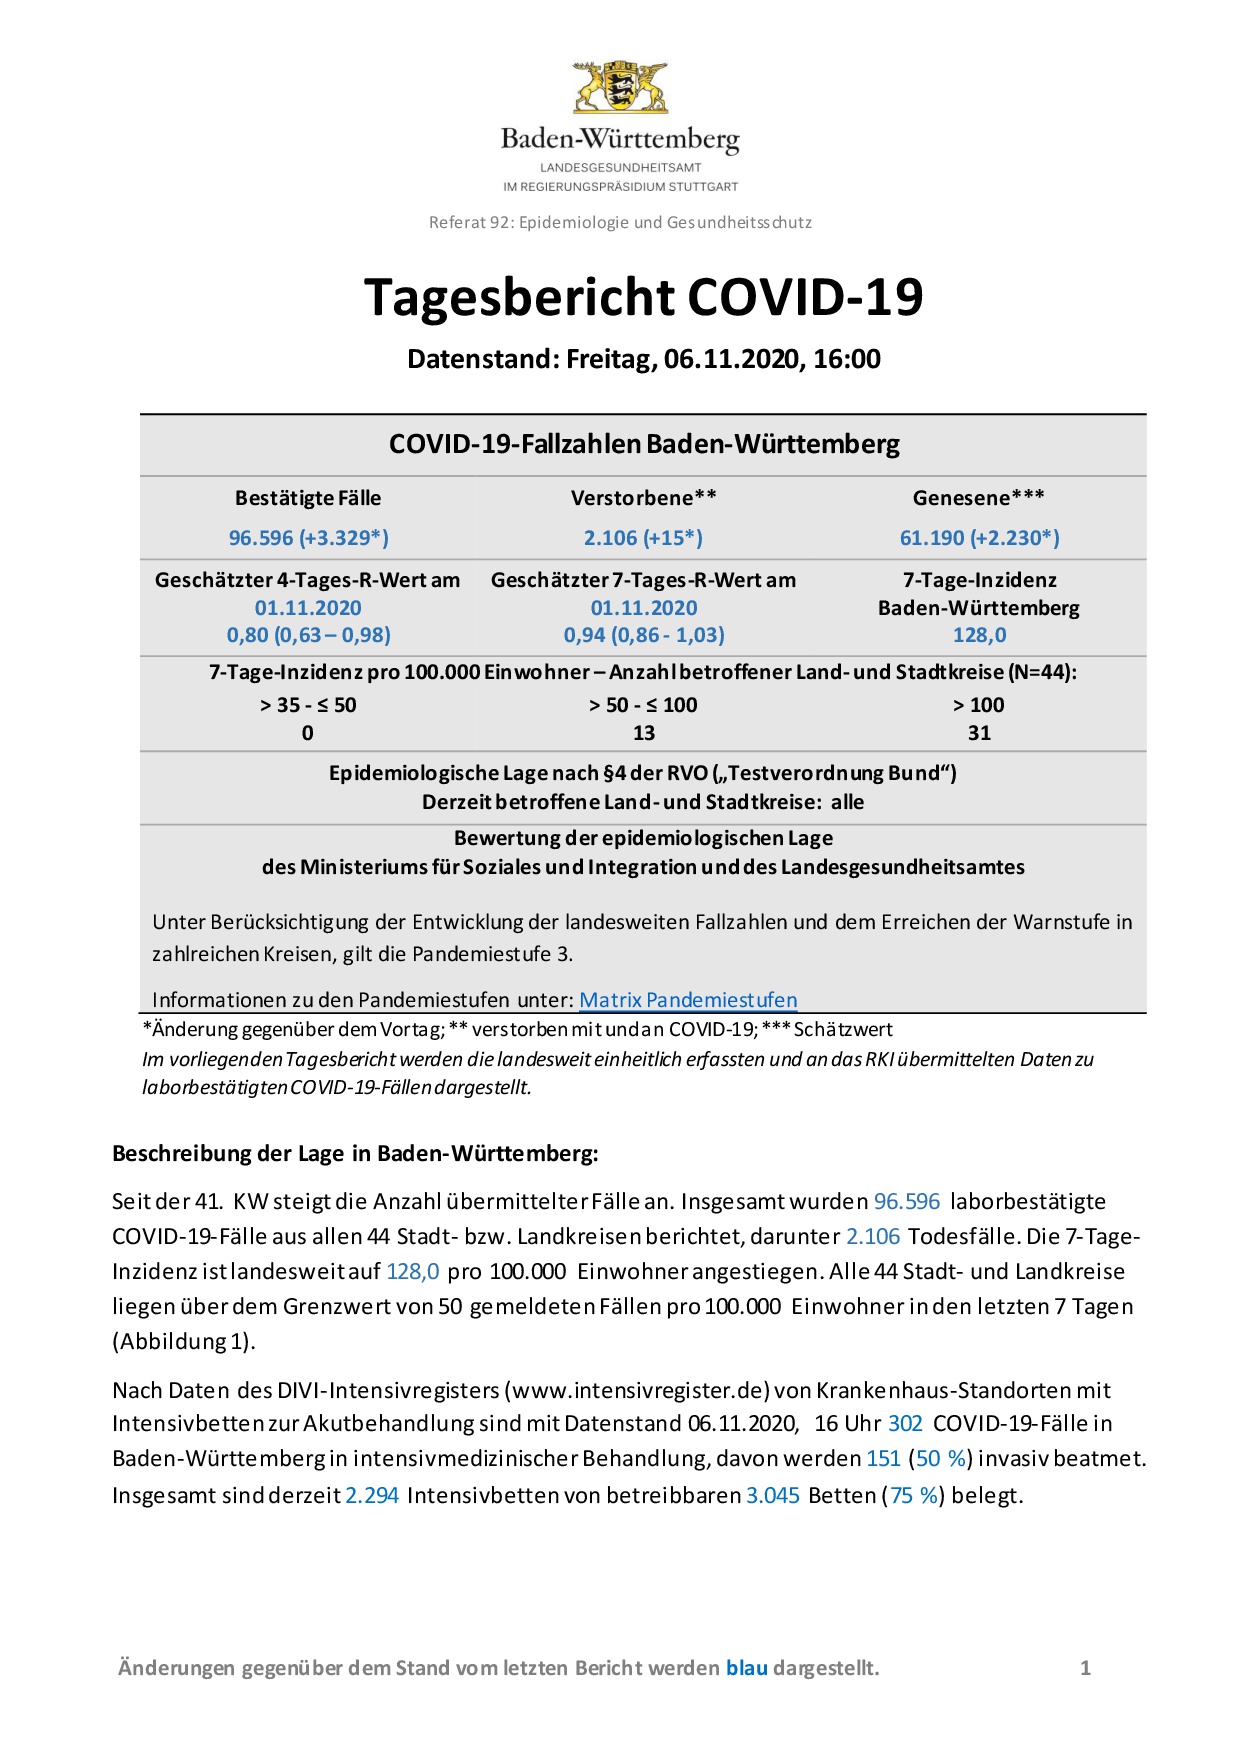 COVID-19 Tagesbericht (06.11.2020) des Landesgesundheitsamts Baden-Württemberg – (ausführlicher)